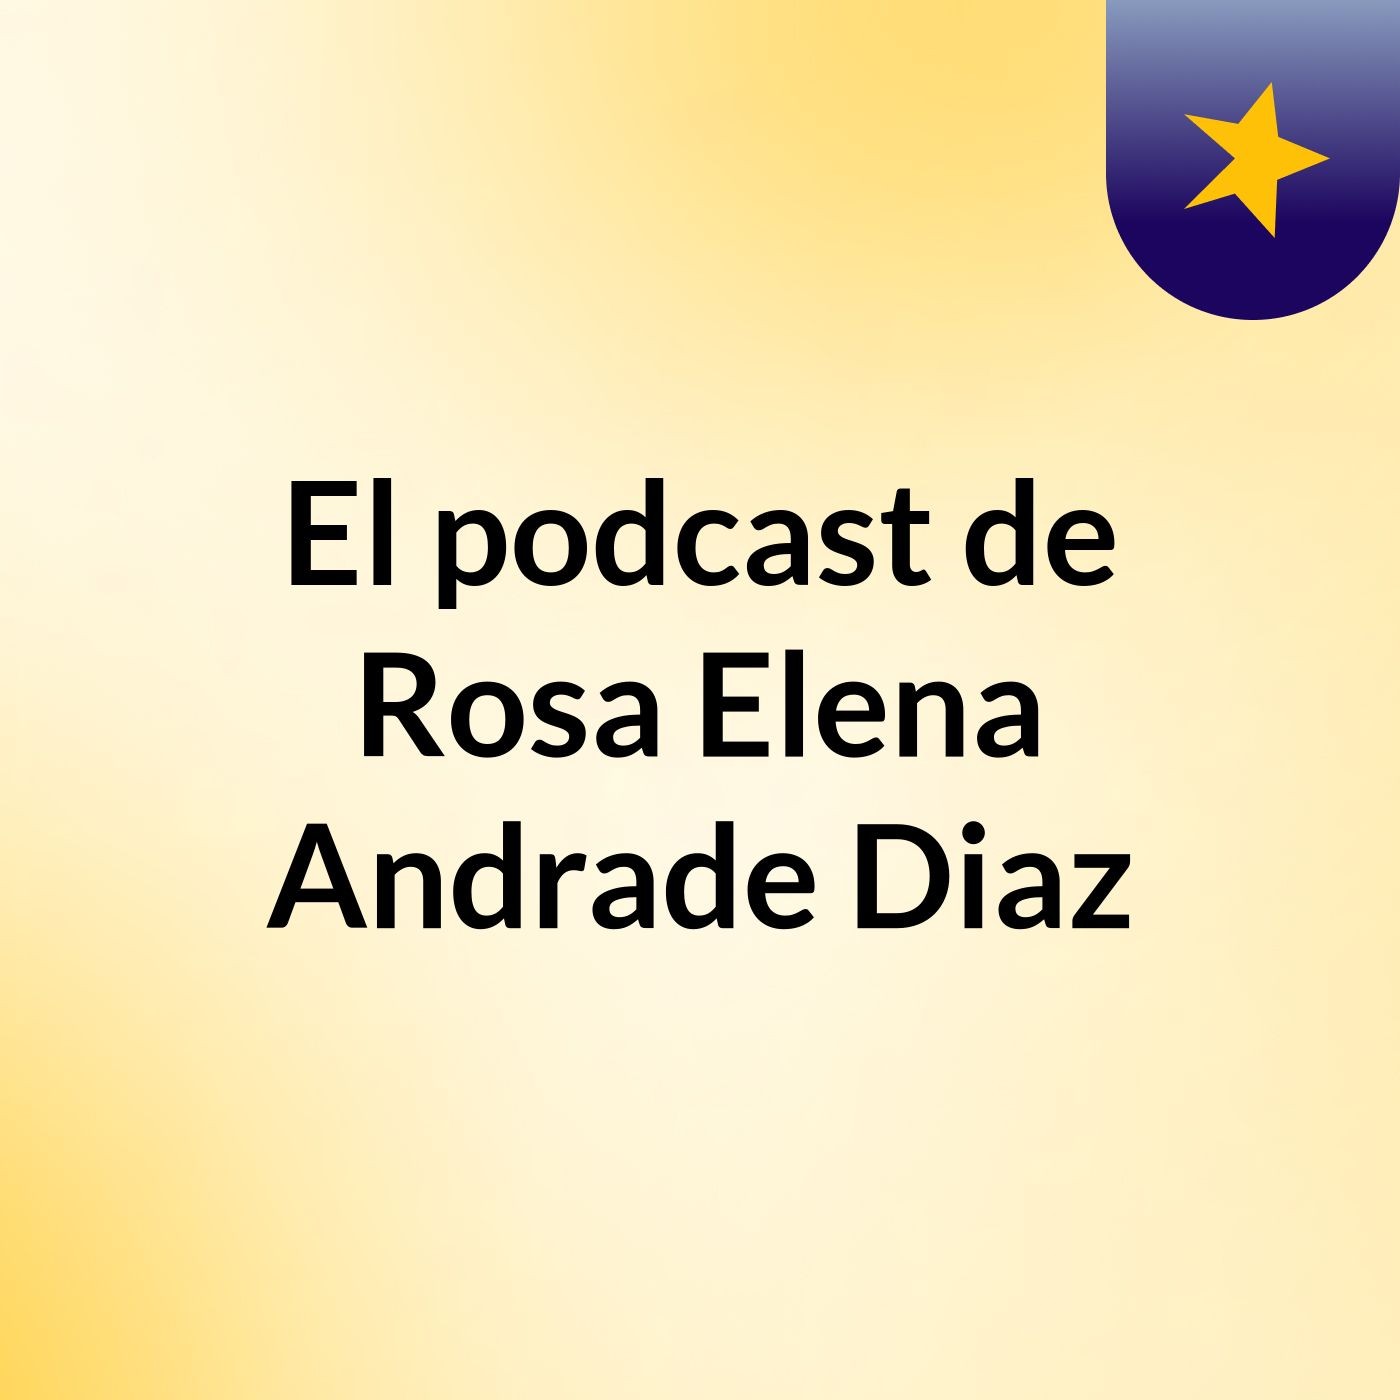 El podcast de Rosa Elena Andrade Diaz